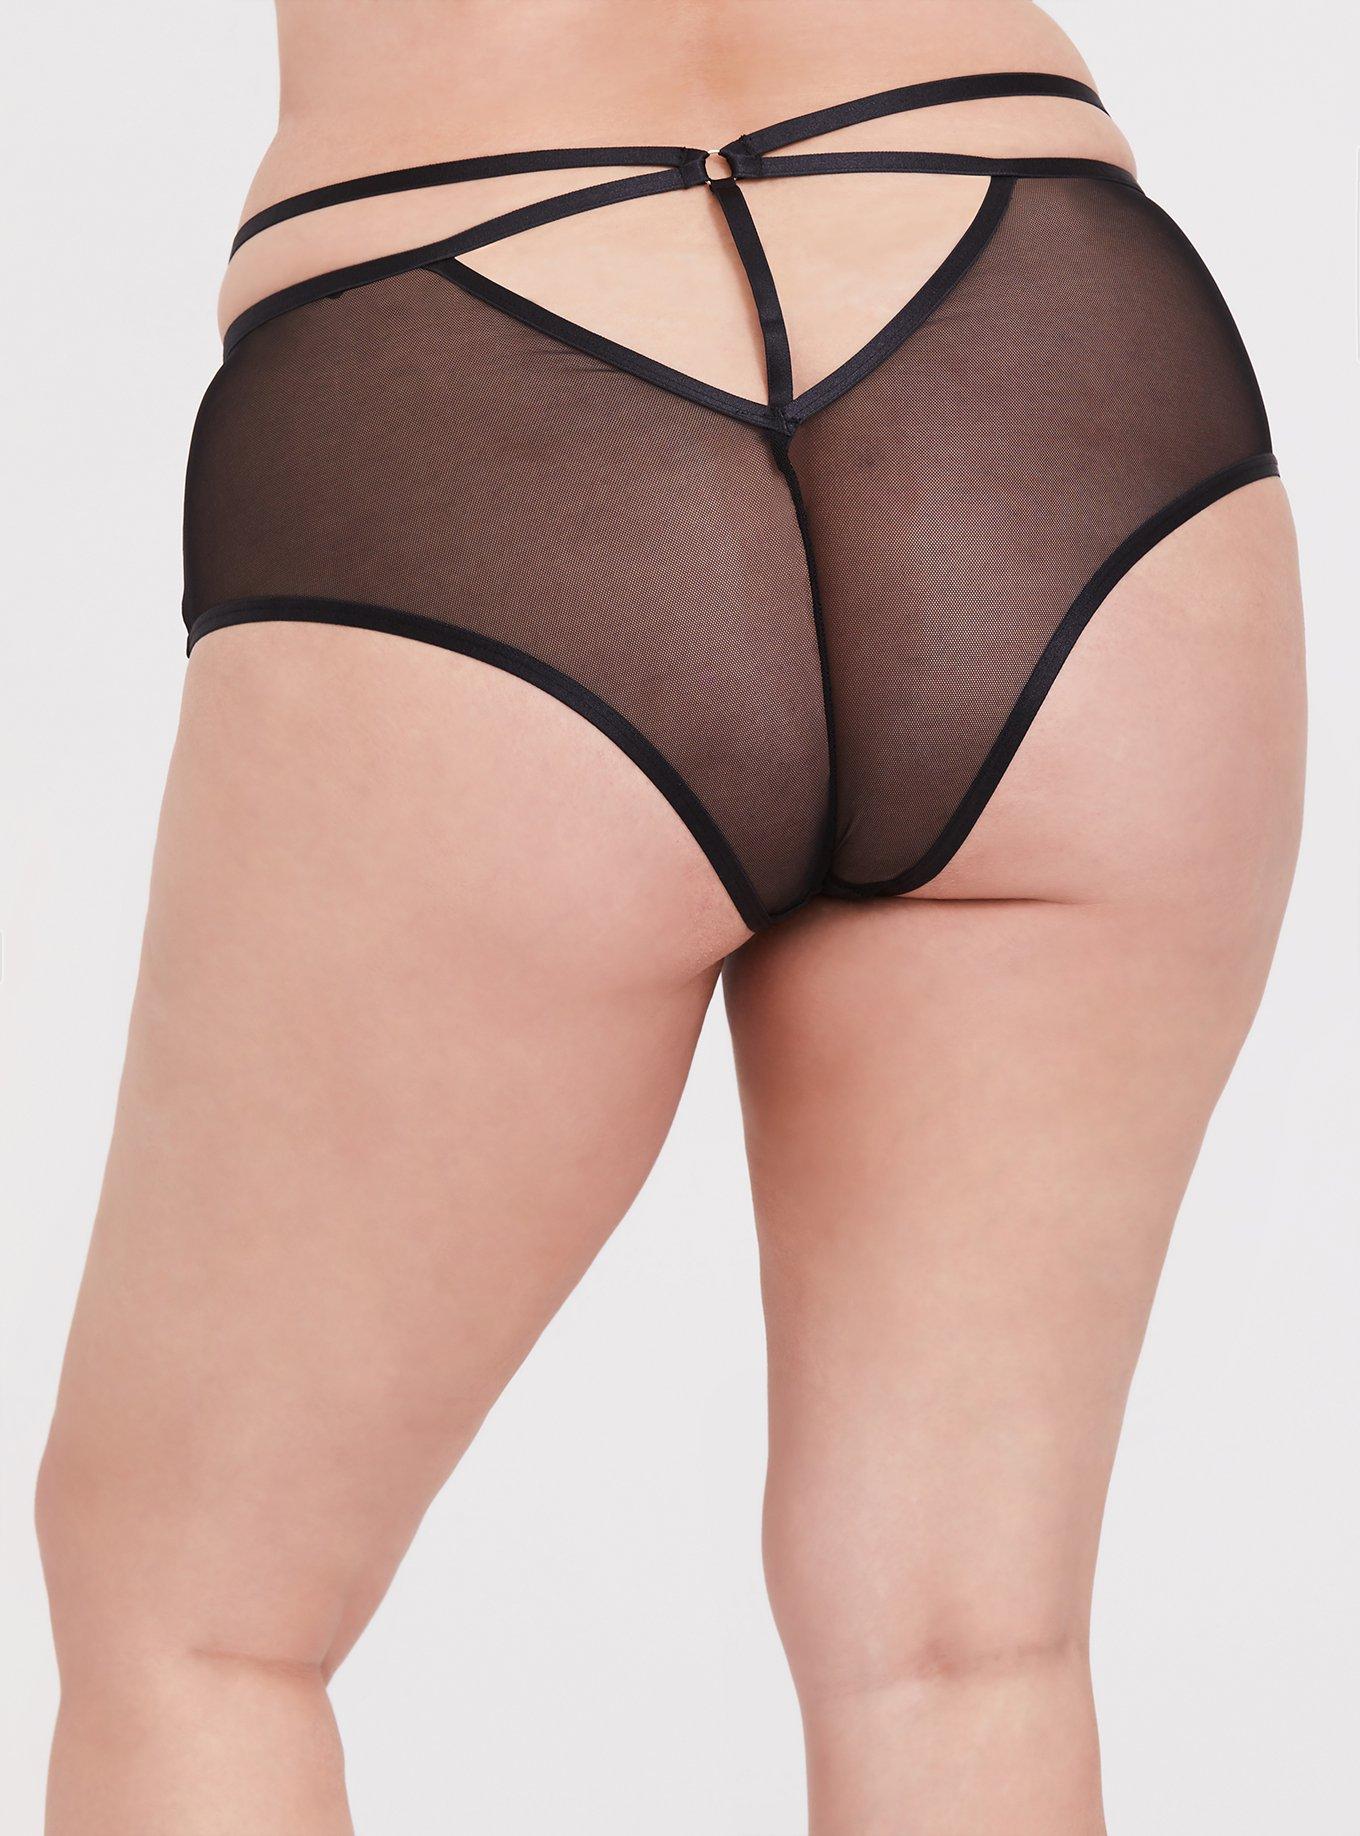 Plus Size - Black Lace Cheeky Panty - Torrid